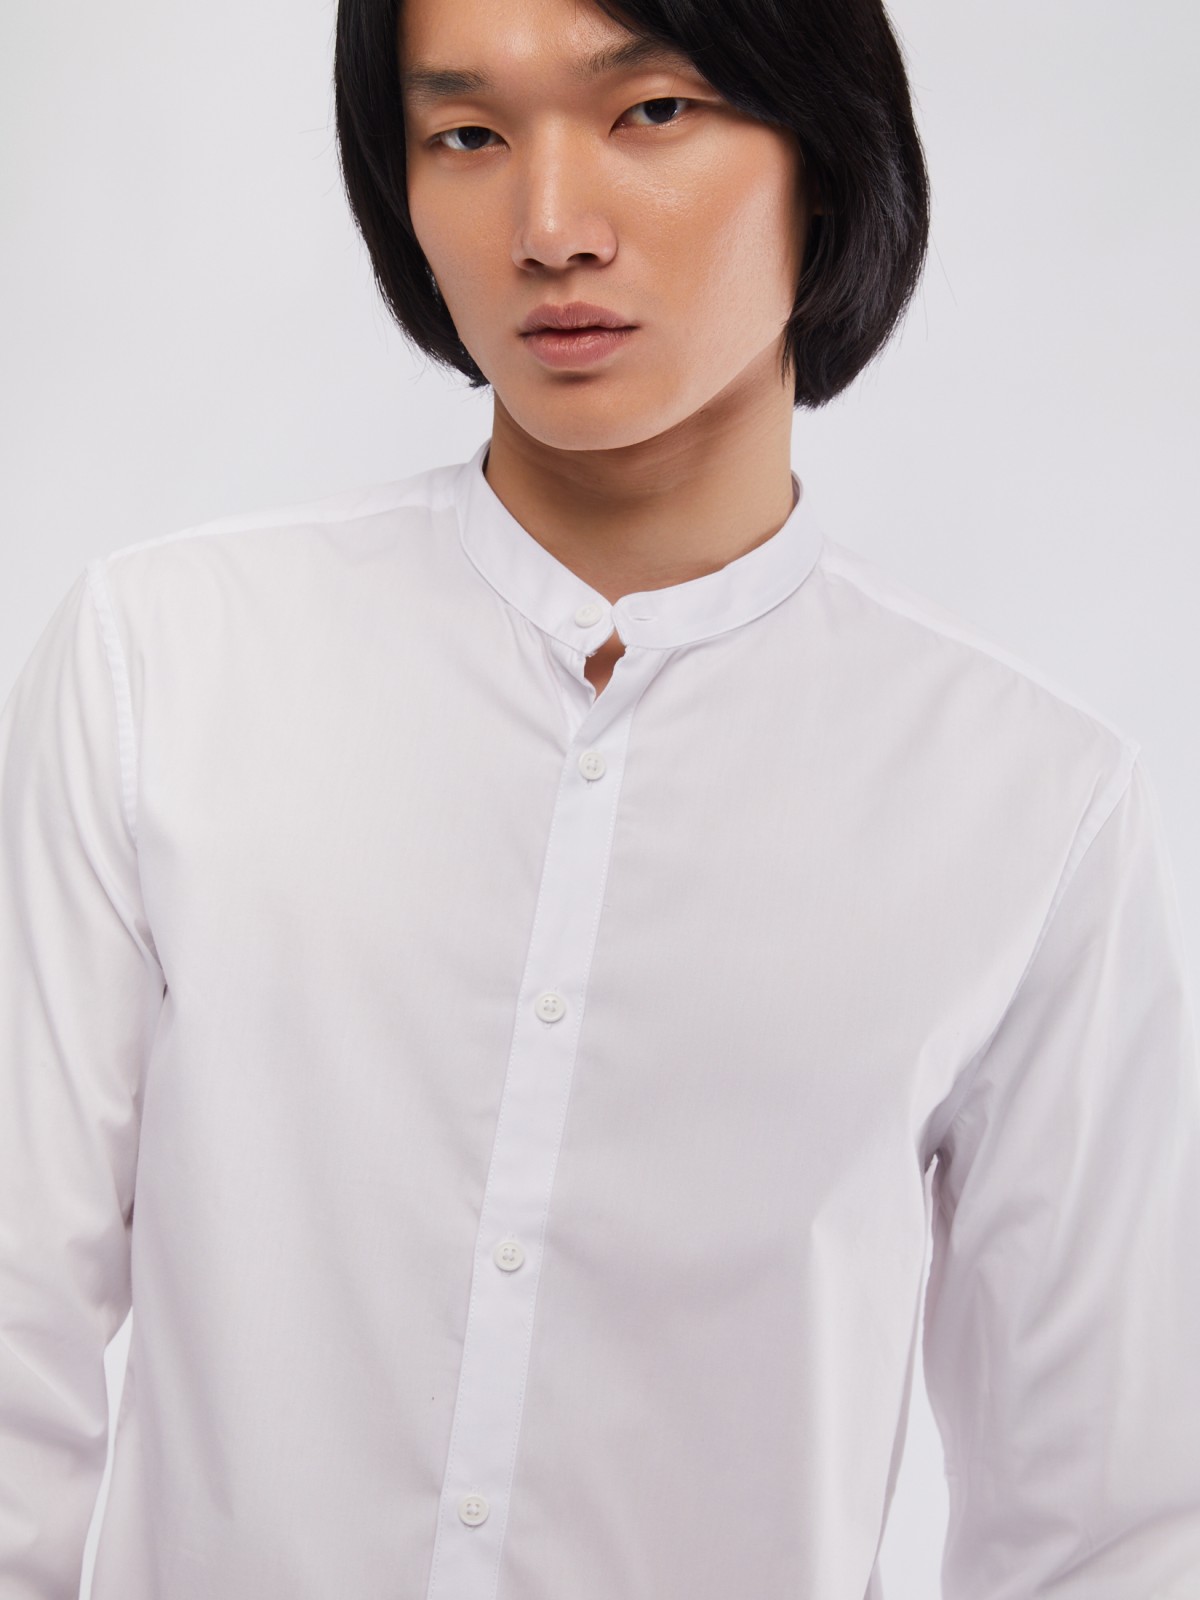 Офисная рубашка с воротником-стойкой и длинным рукавом zolla 01411217W072, цвет белый, размер M - фото 4